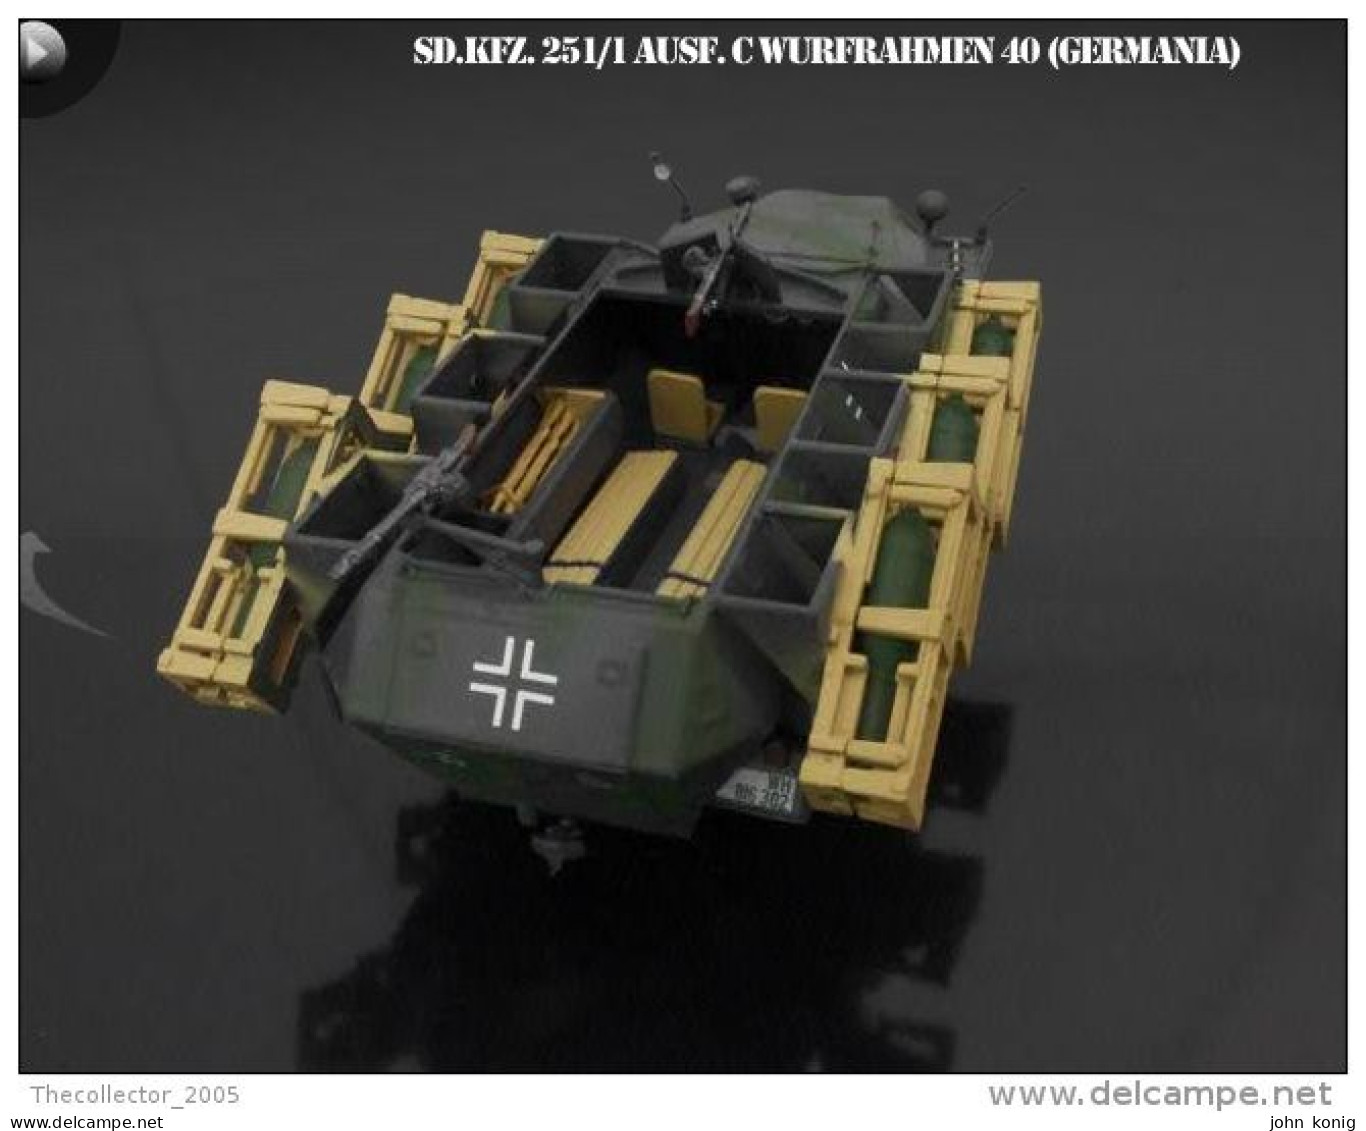 MILITARY DIE CAST MODEL (CARRO ARMATO-MEZZI MILITARI-ARMOURED TANK) - SD.KFZ.251-1 AUSF. C MIT WURFRAHMEN 40-SCALA 1:43 - Panzer